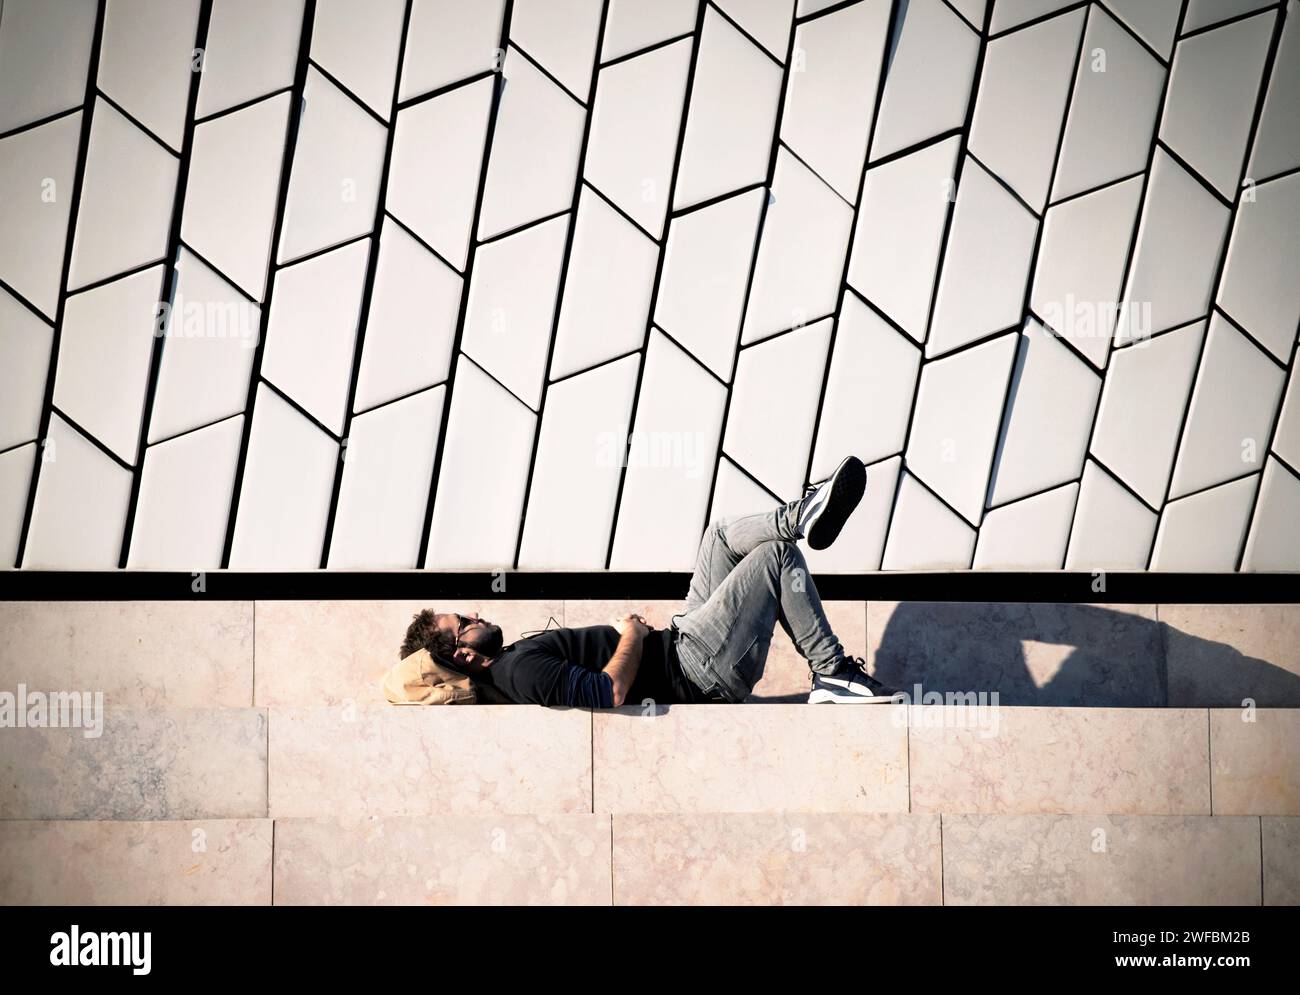 Ein junger Mann schlummert friedlich unter der Wärme der Sonne, umrahmt von den eleganten Linien einer modernen urbanen Kulisse Stockfoto